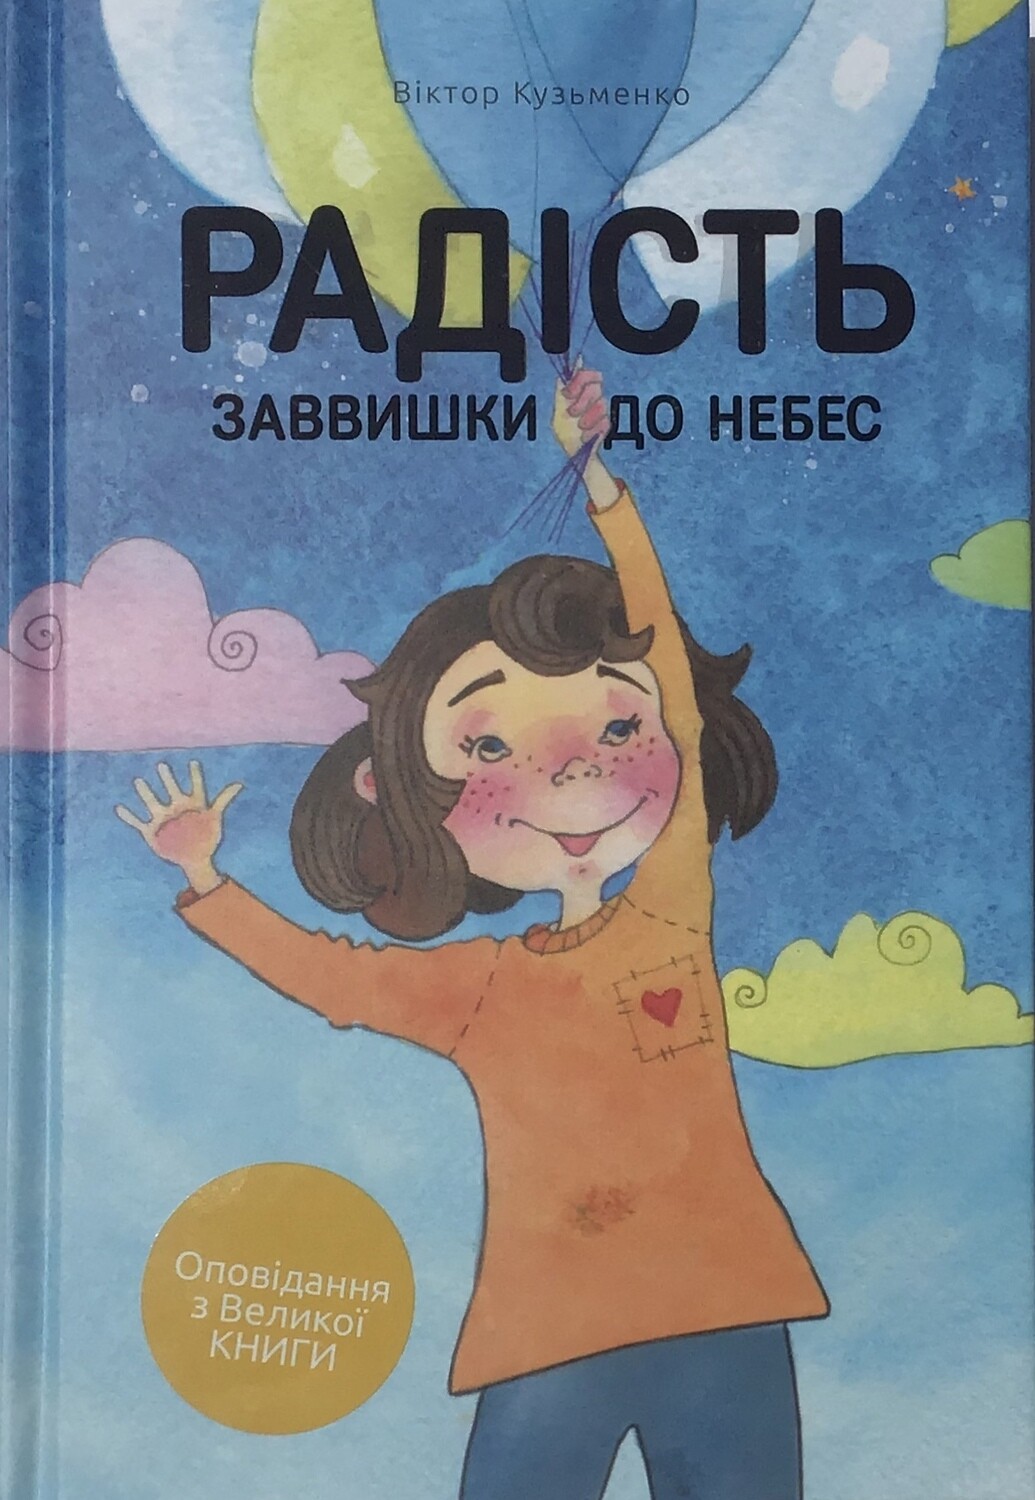 Радість заввишки до небес. Ukrainian book for children